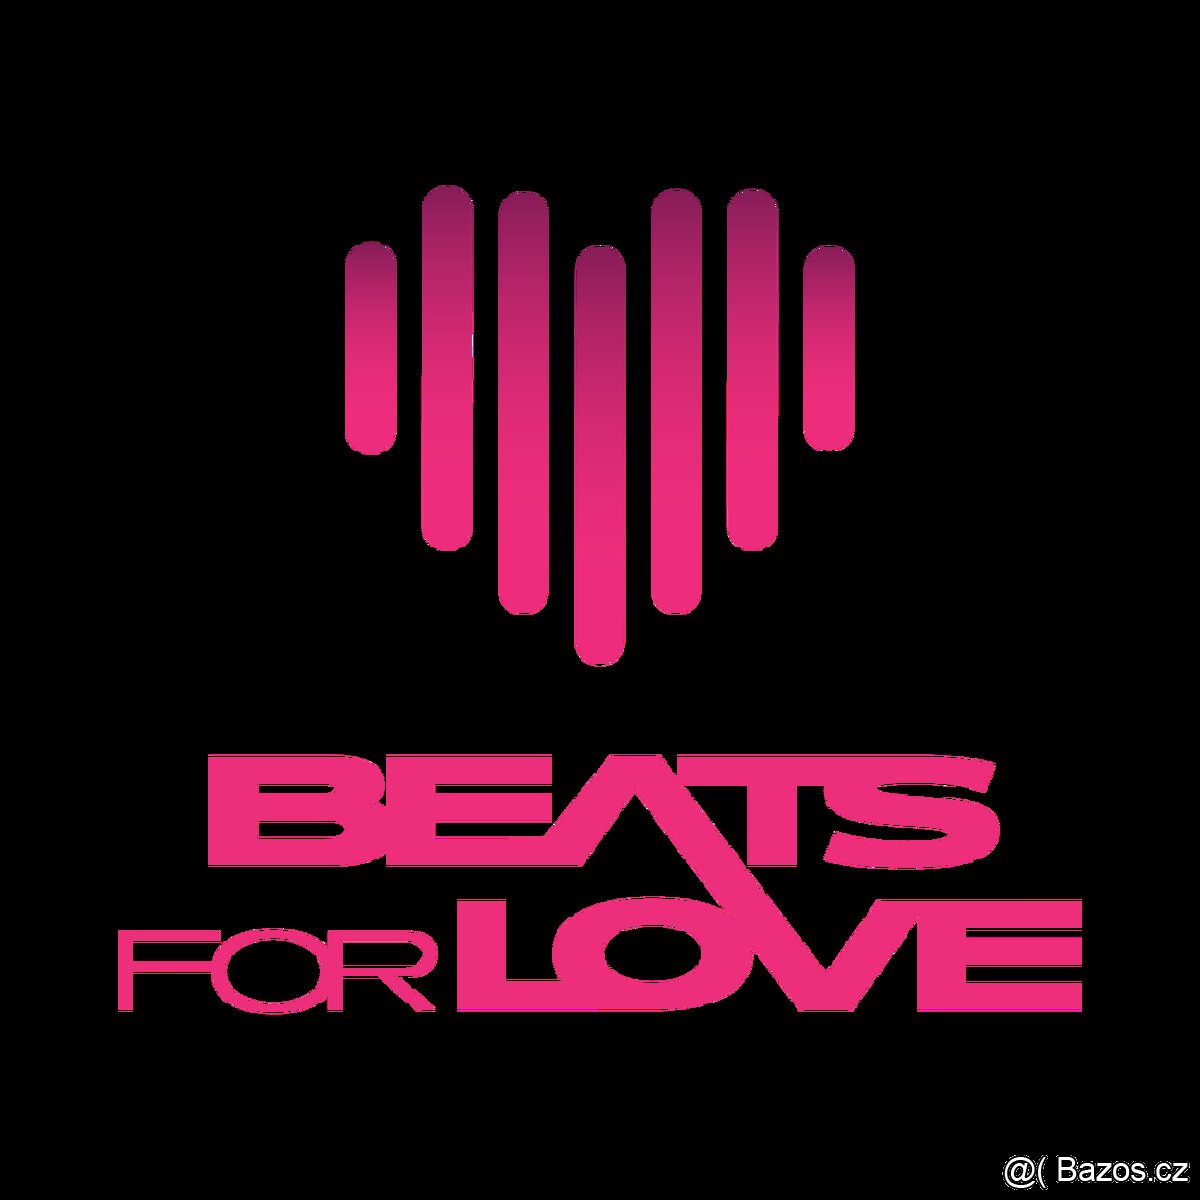 Celofestivalová klasická vstupenka na Beats for Love